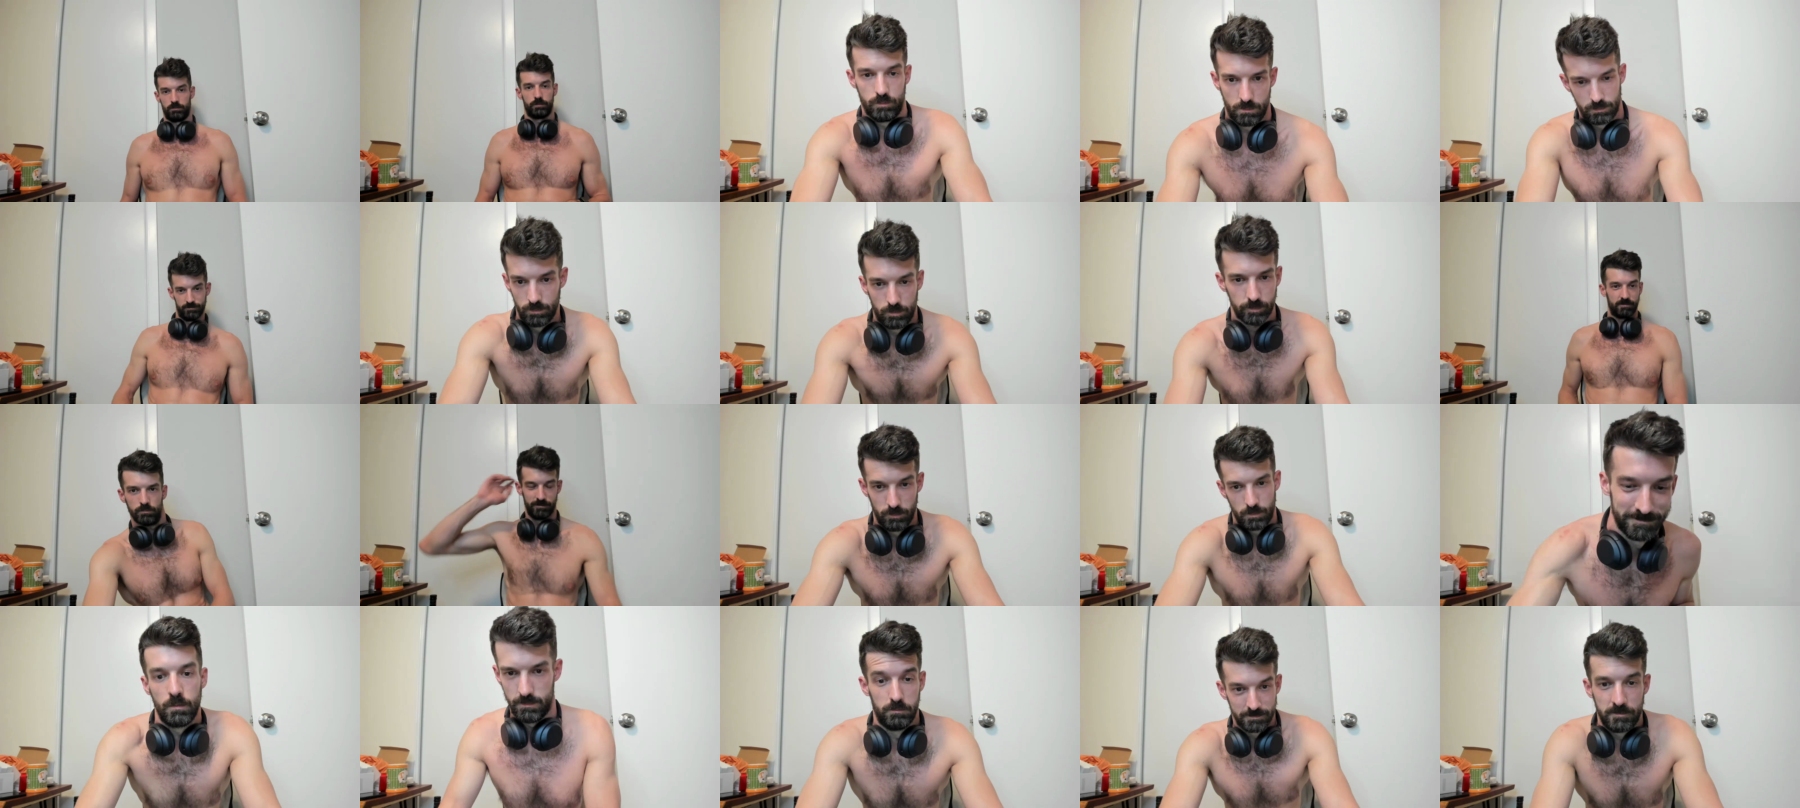 Kennykyle  09-10-2021 Male Webcam